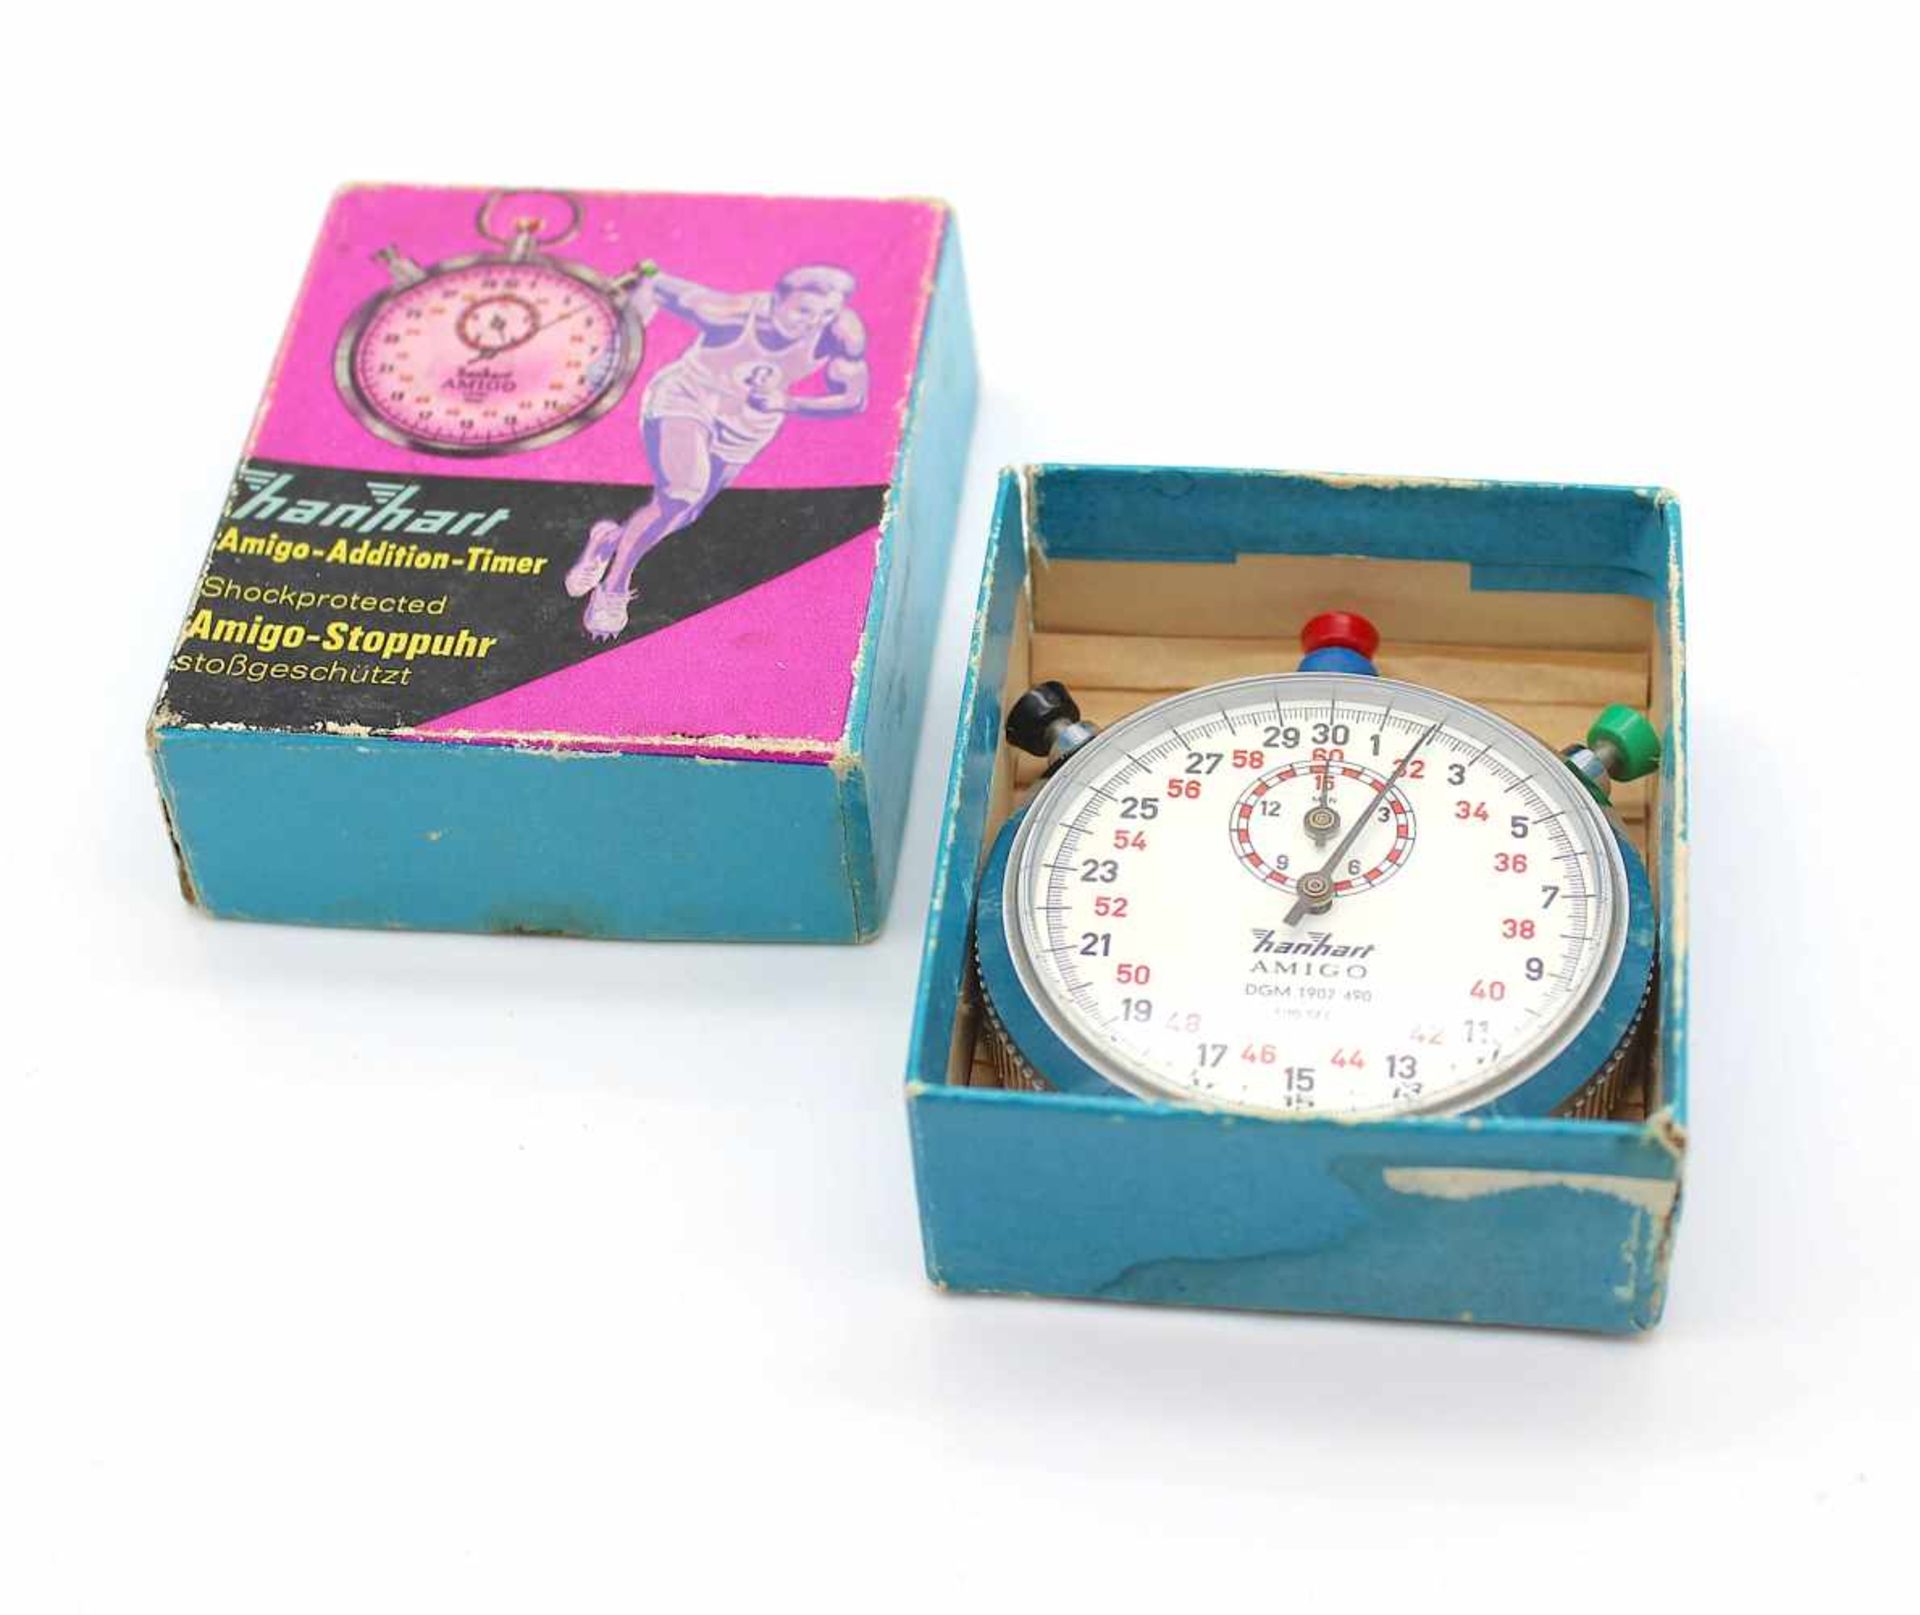 Hanhart Amigo stopwatch in original box. The clock is runnable.Hanhart Amigo-Stoppuhr im - Bild 3 aus 3